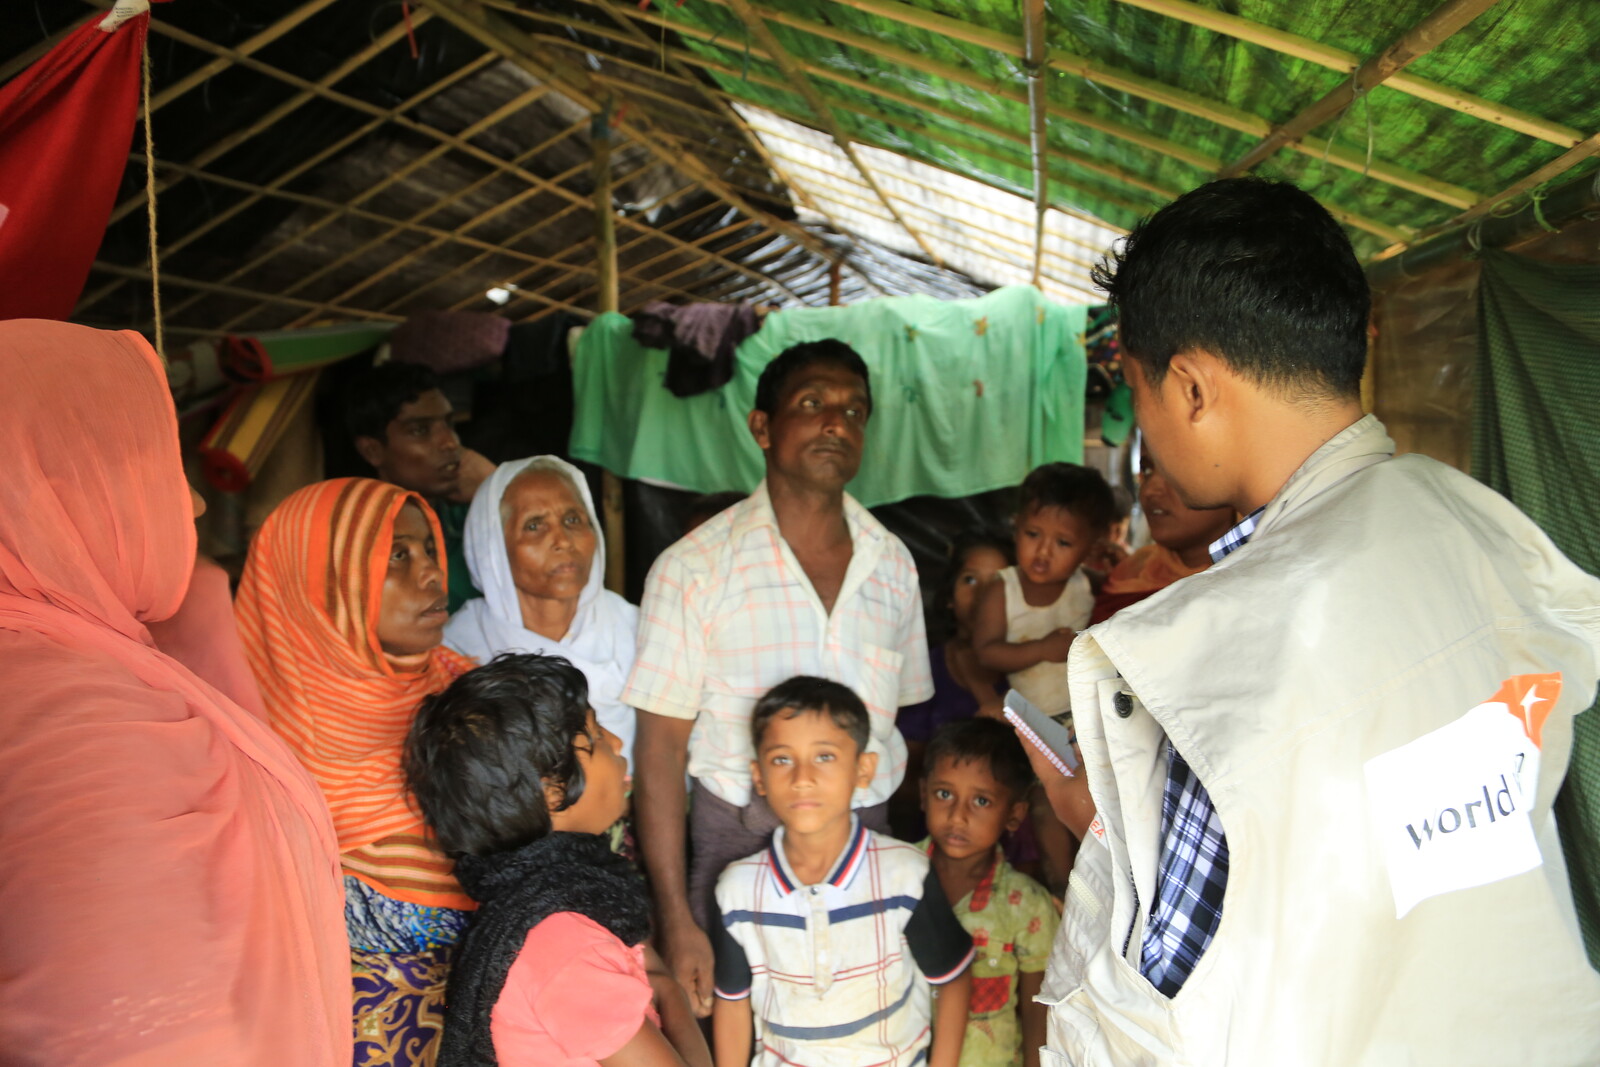 Unsere Bündnisorganisationen sind weltweit für Not leidende Menschen wie hier in Bangladesch im Einsatz.